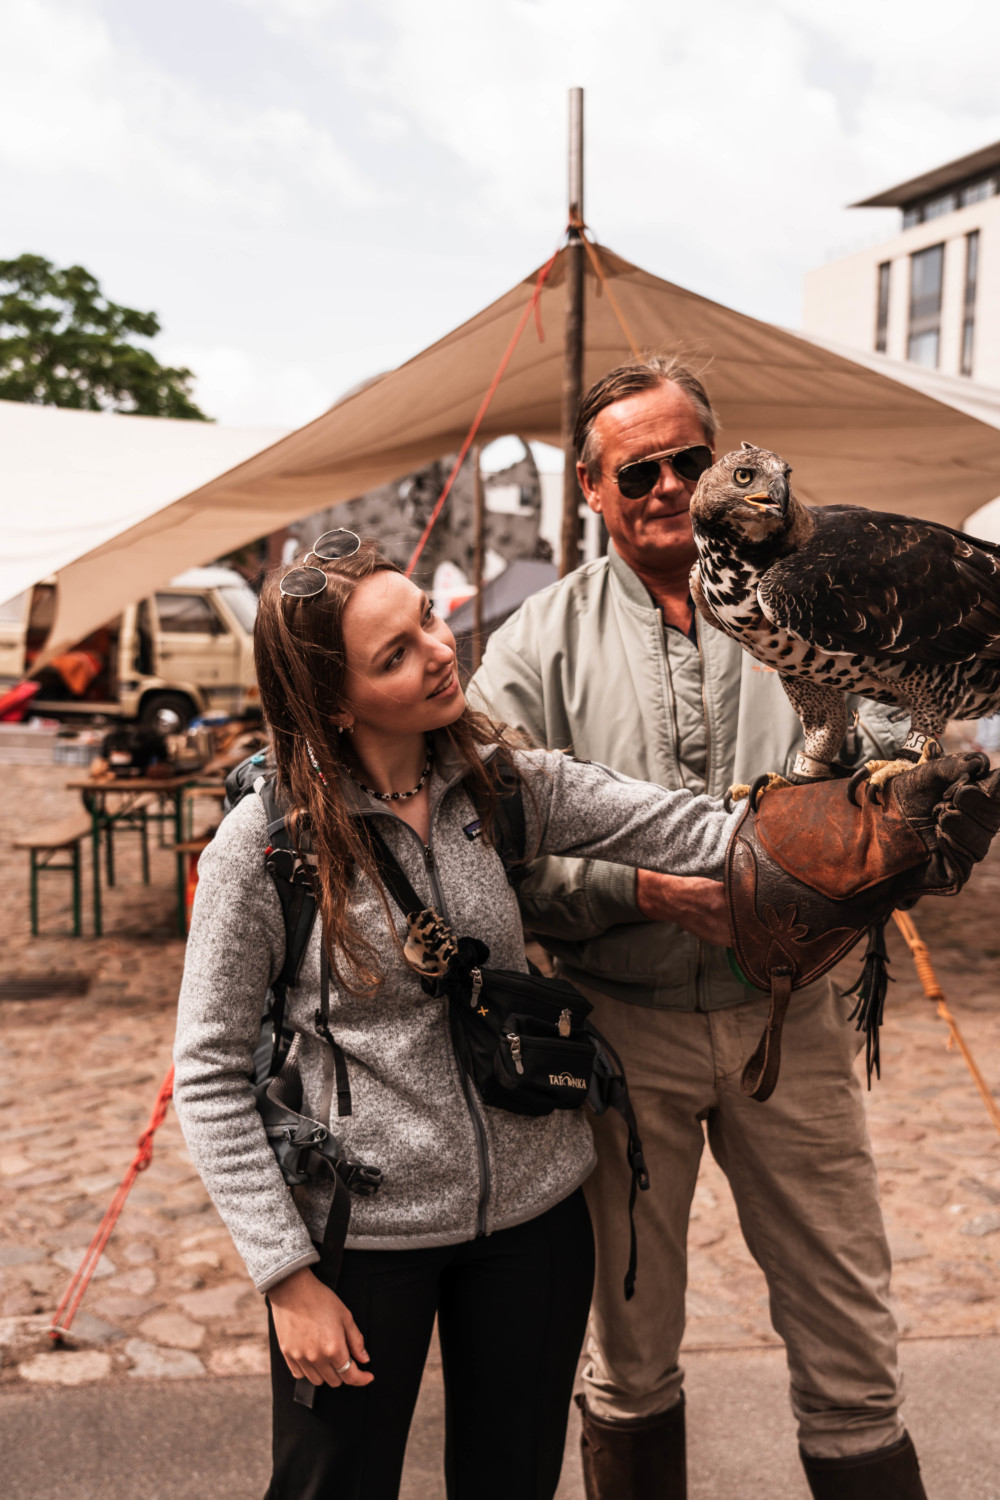 Besucher mit Adler auf dem Arm